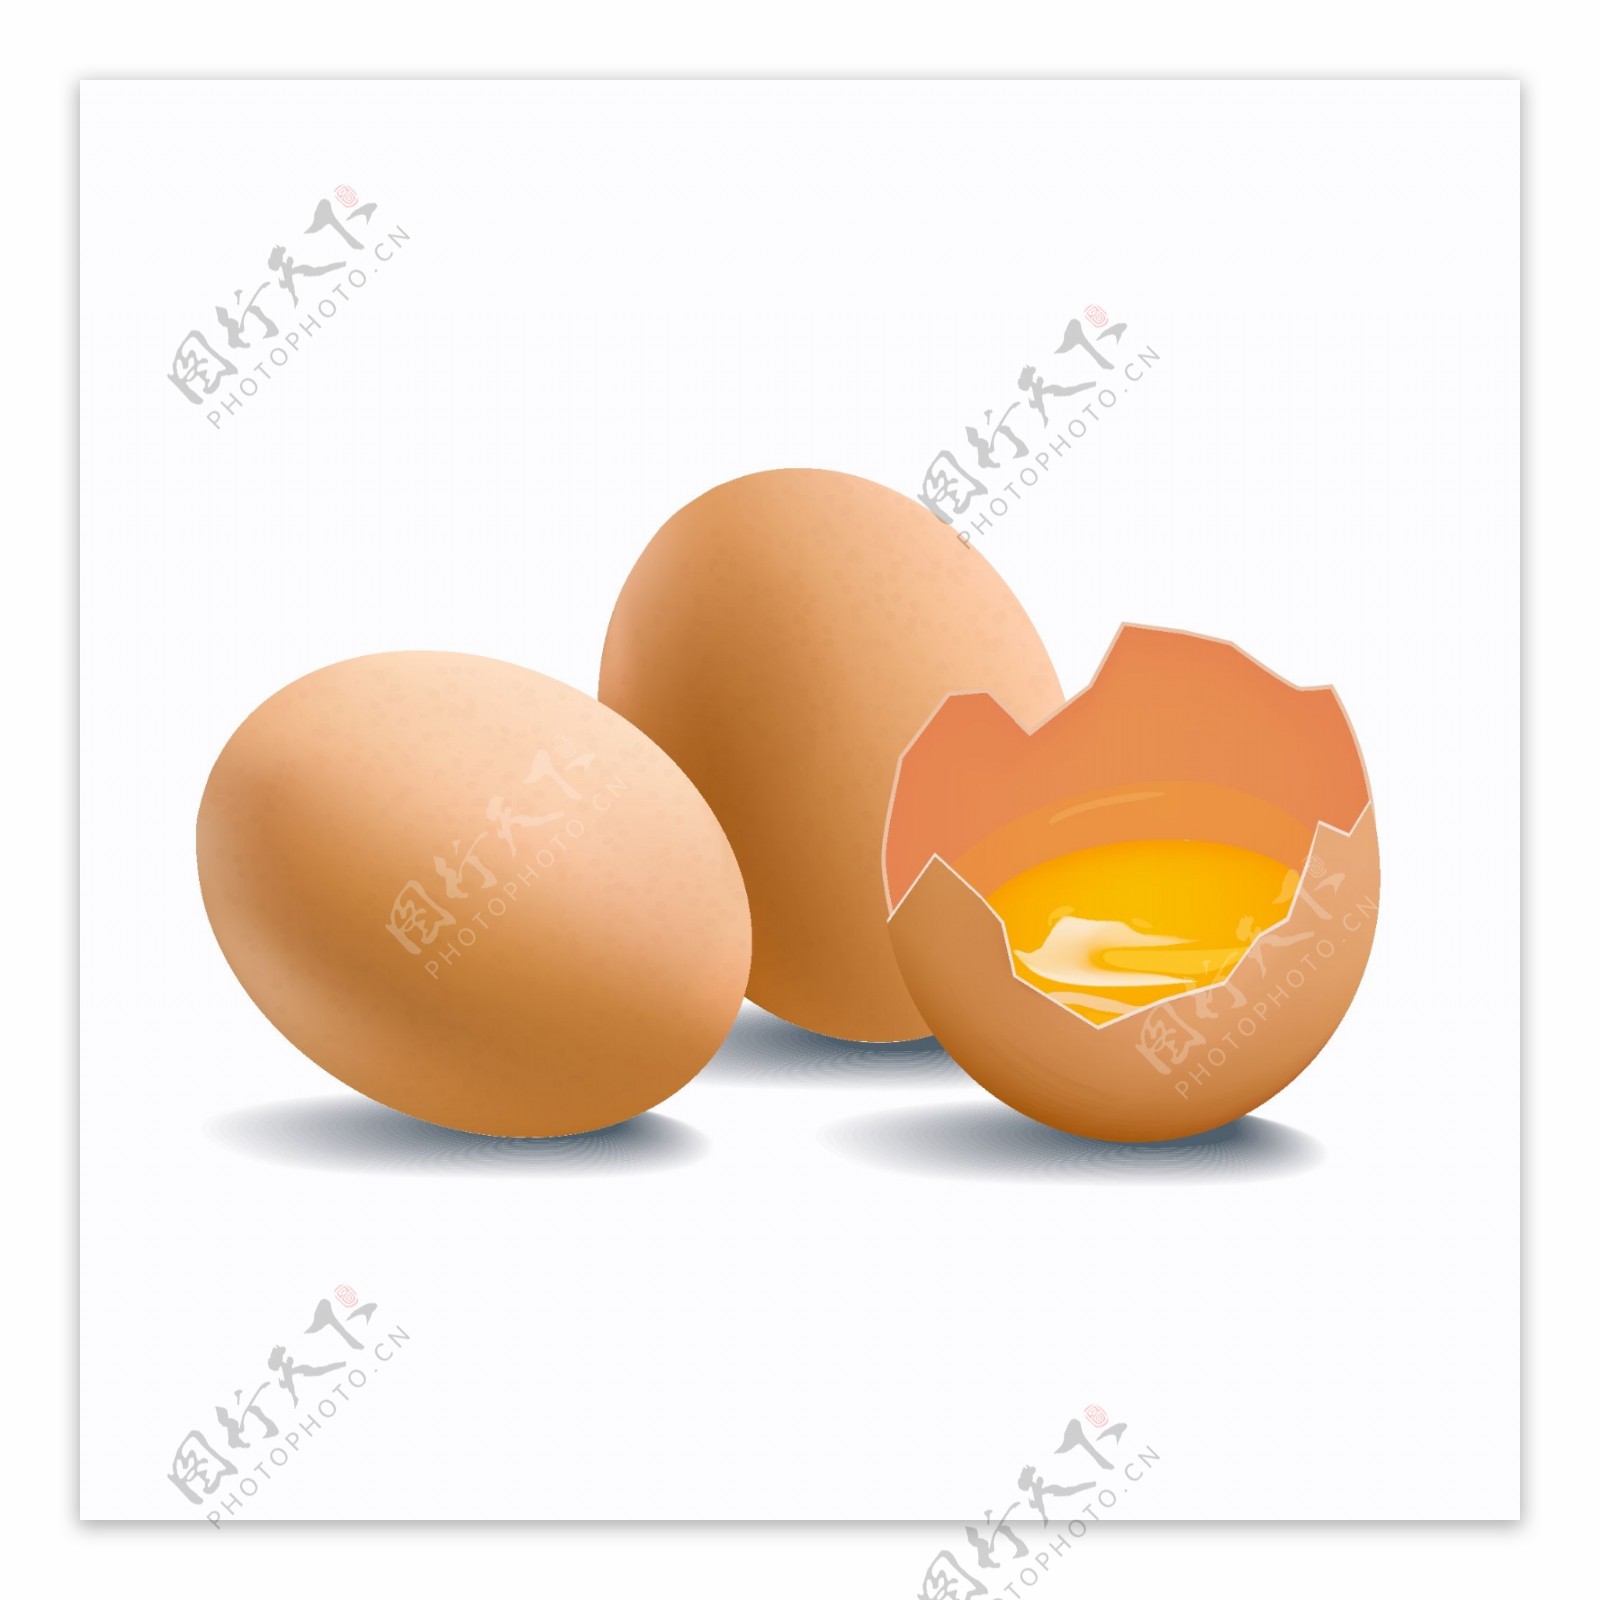 2个新鲜鸡蛋和1个打碎的鸡蛋矢量